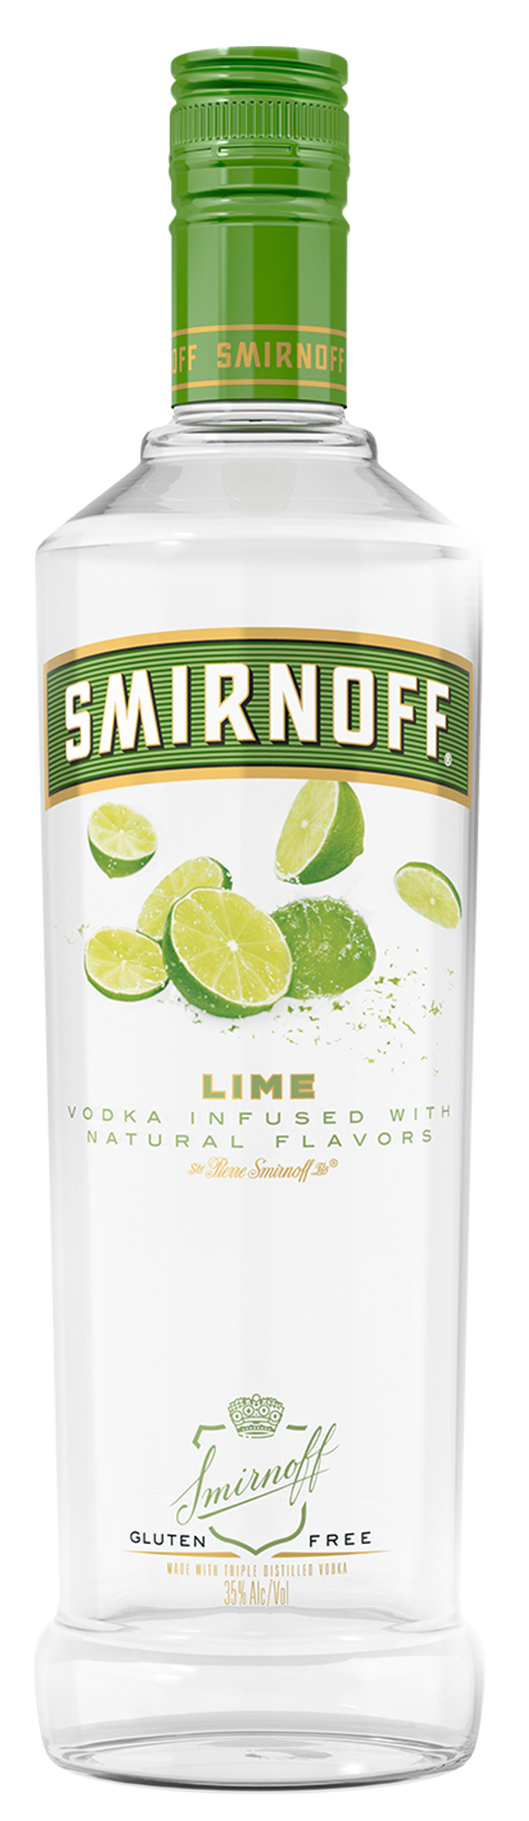 SMIRNOFF LIME Vodka BeverageWarehouse